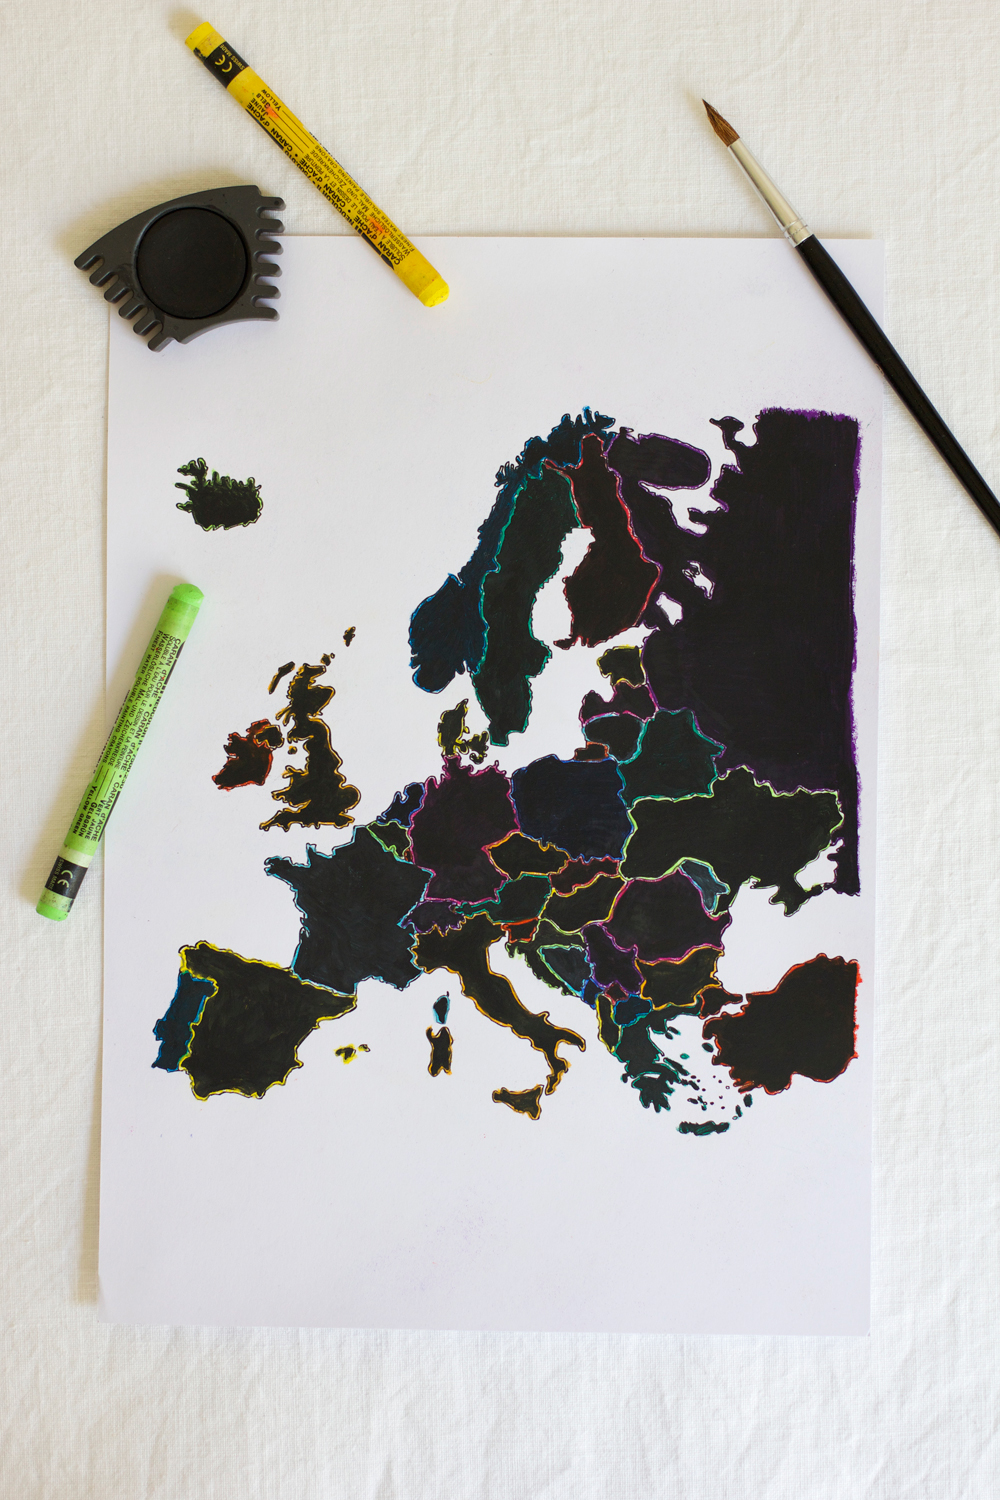 Europakarte rubbeln - Die ausgezeichnetesten Europakarte rubbeln unter die Lupe genommen